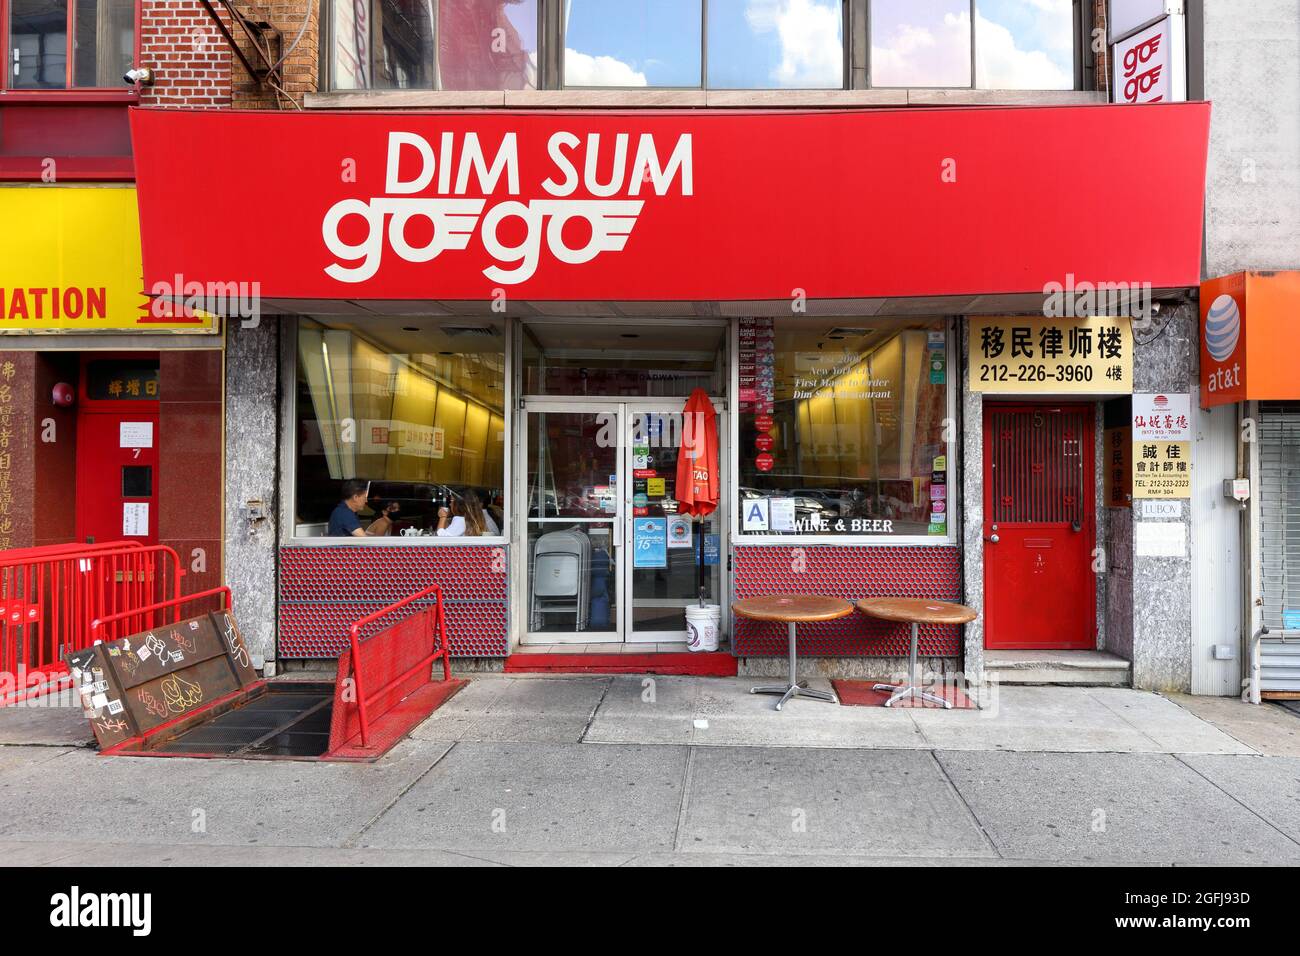 DIM sum Go Go Go, 5 East Broadway, New York, NY. Façade extérieure d'un restaurant dim sum dans le quartier chinois de Manhattan. Banque D'Images